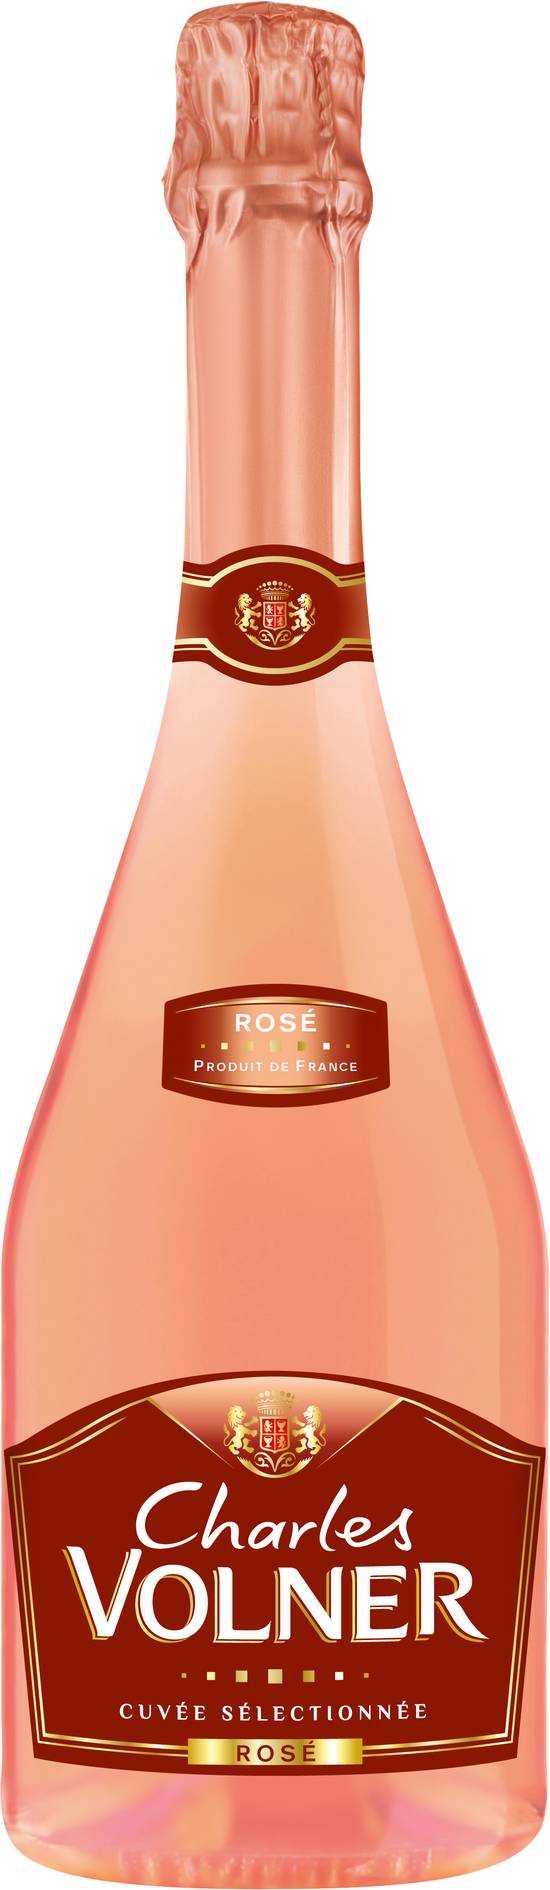 Charles Volner - Vin rosé mousseux (750 ml)